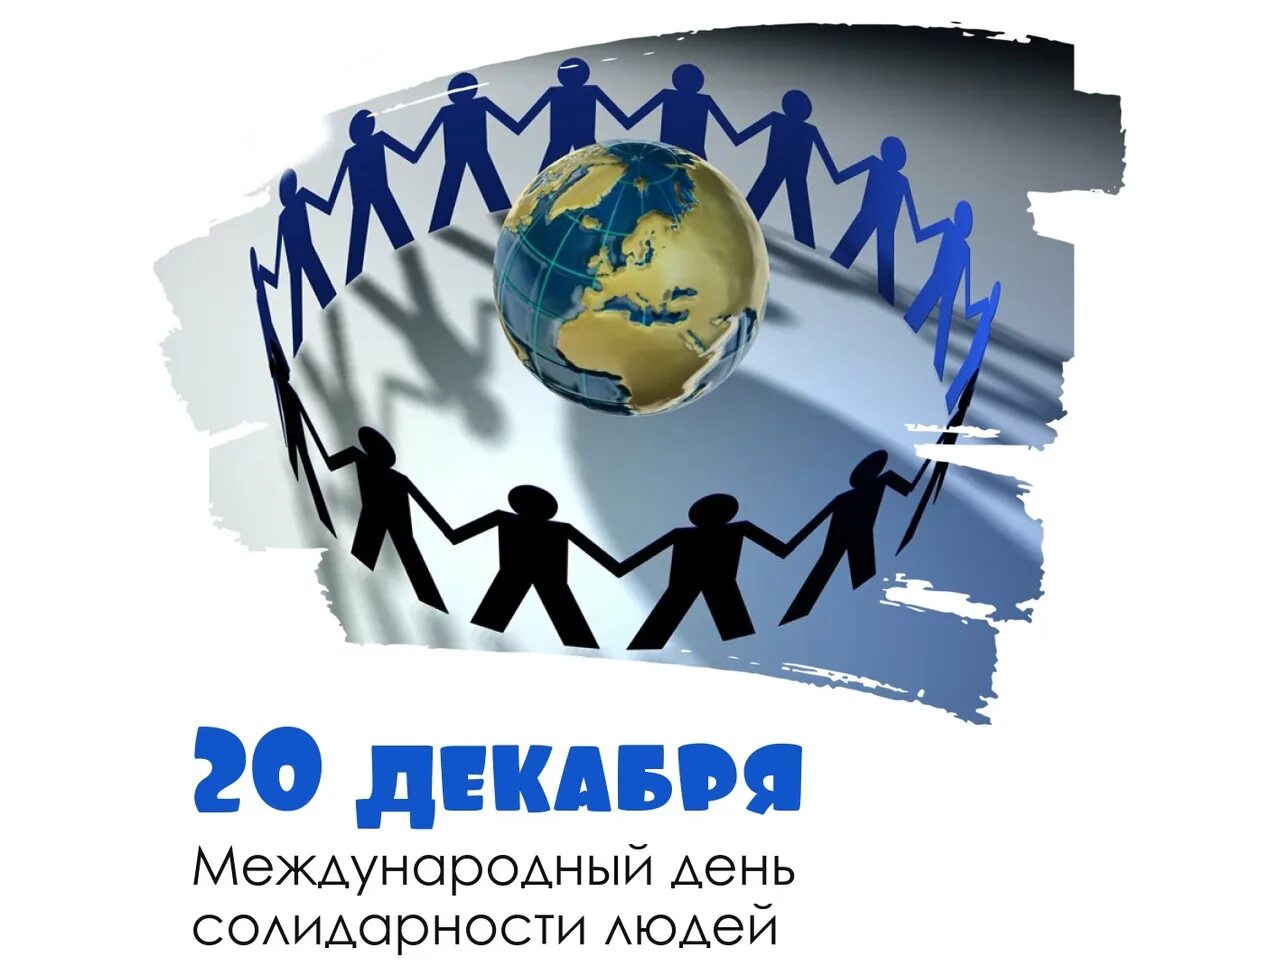 20 мая день праздник. Международный день солидарности людей. 20 – Международный день солидарности людей. Открытки Международный день солидарности людей. День солидарности 20 декабря.